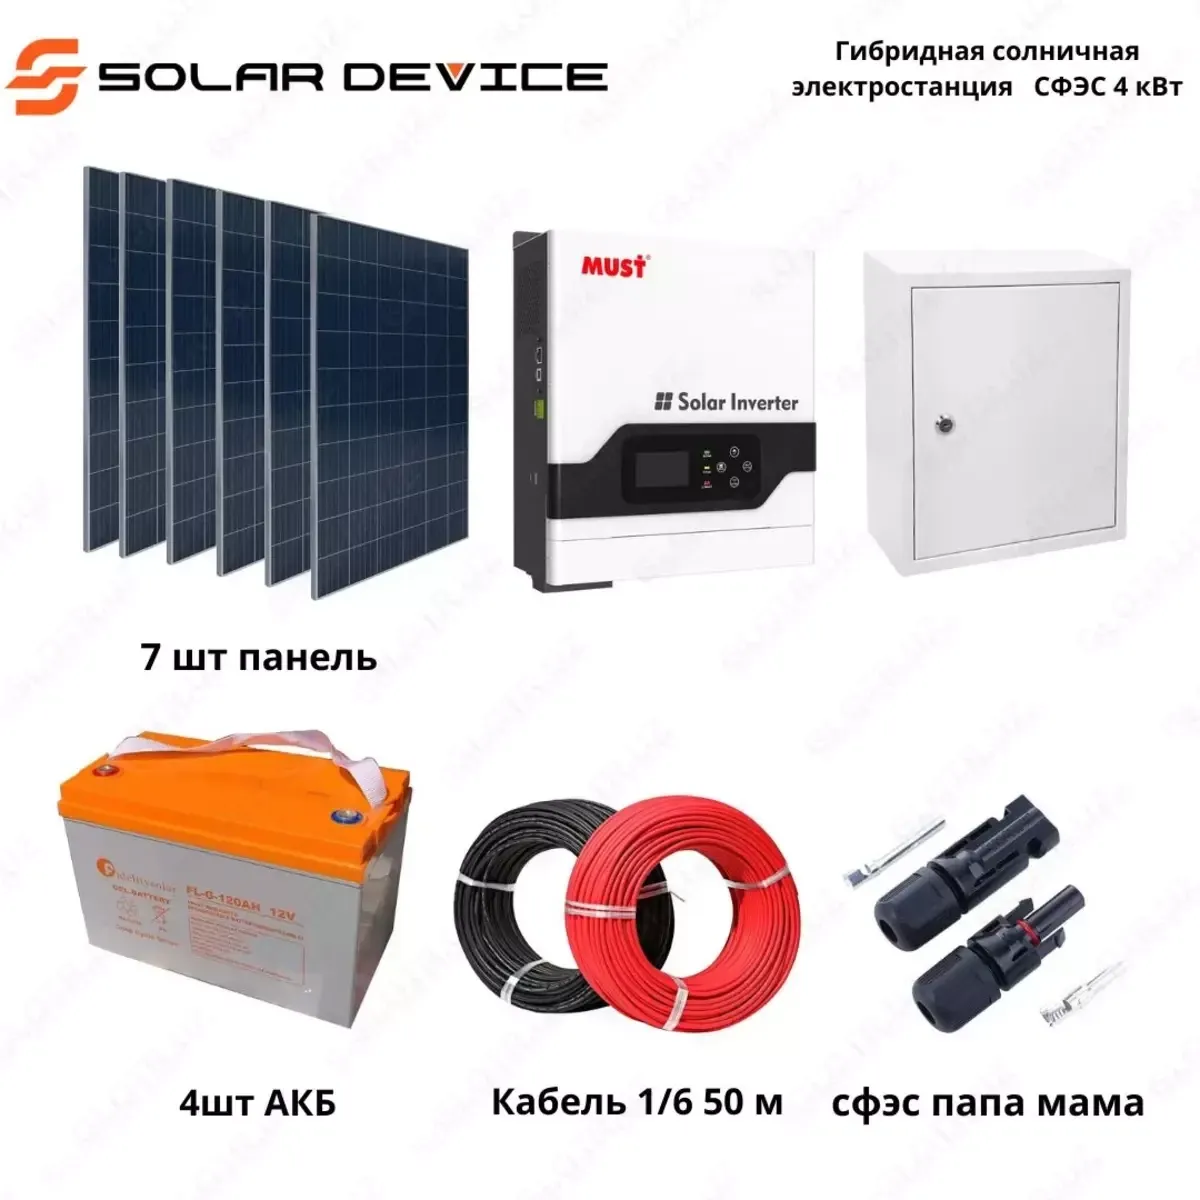 Гибридная солнечная электростанция "SOLAR" СФЭС (4 кВт)#1